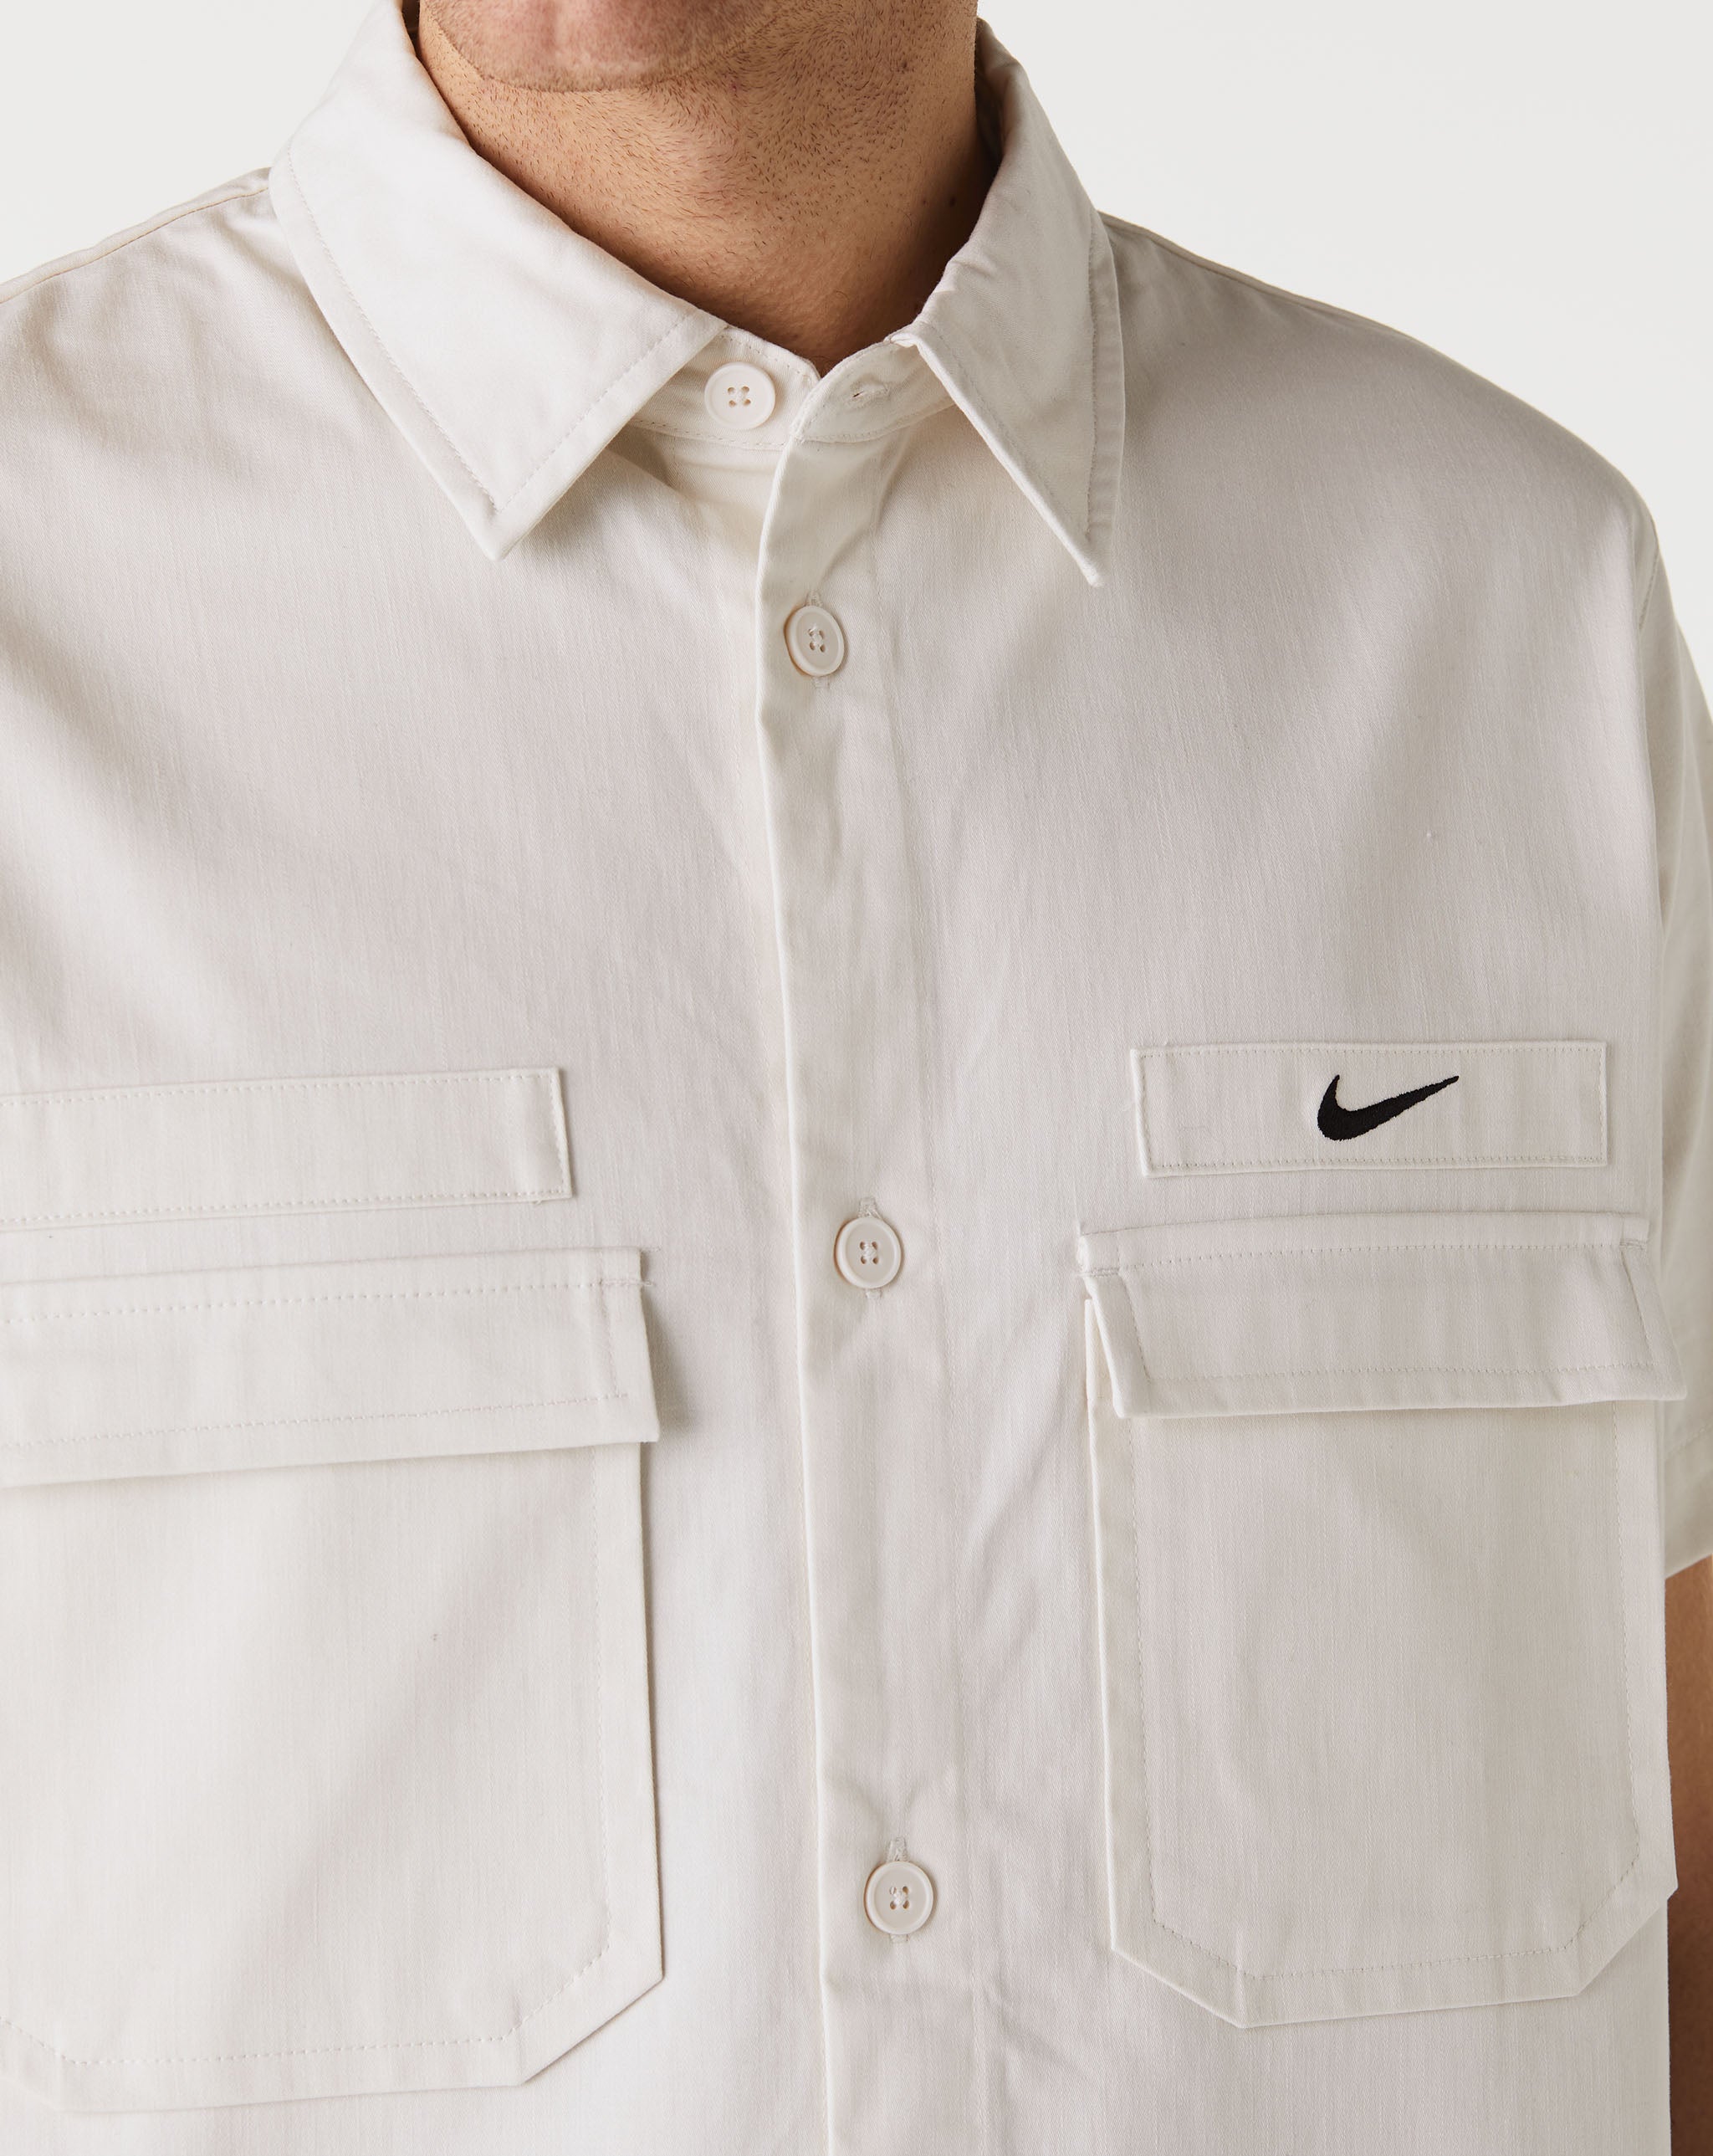 Nike Woven Military Shirt  - Cheap Urlfreeze Jordan outlet